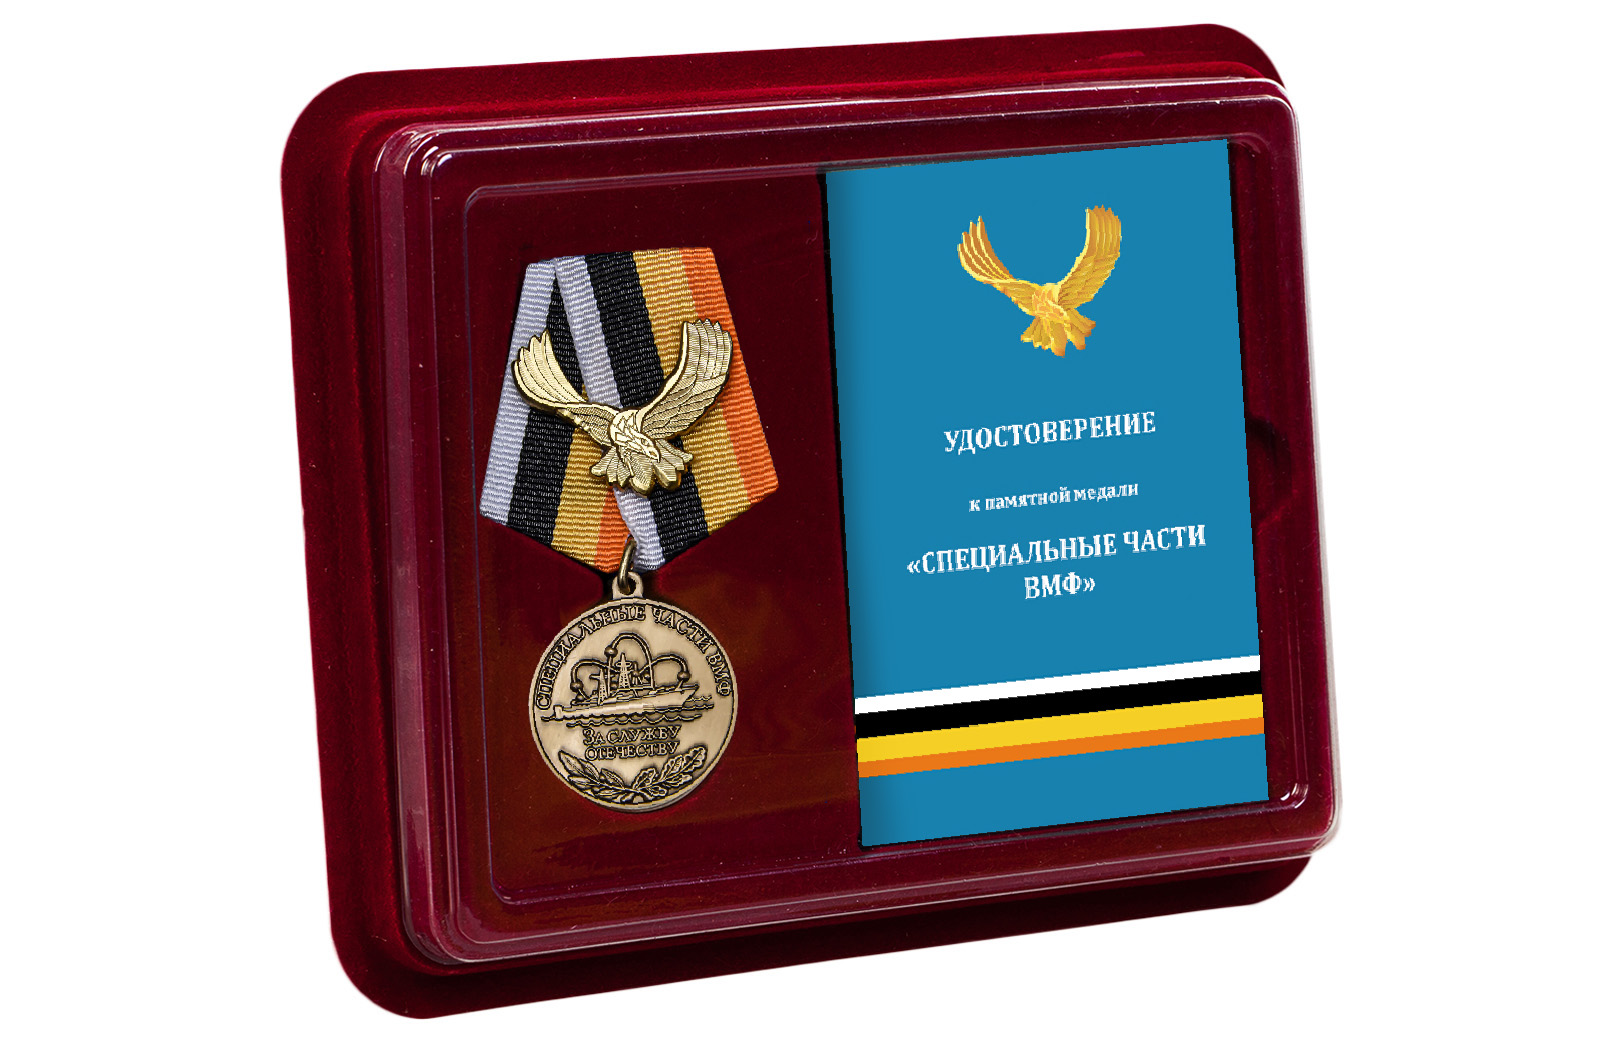 Купить медаль За службу Отечеству Специальные части ВМФ в подарок